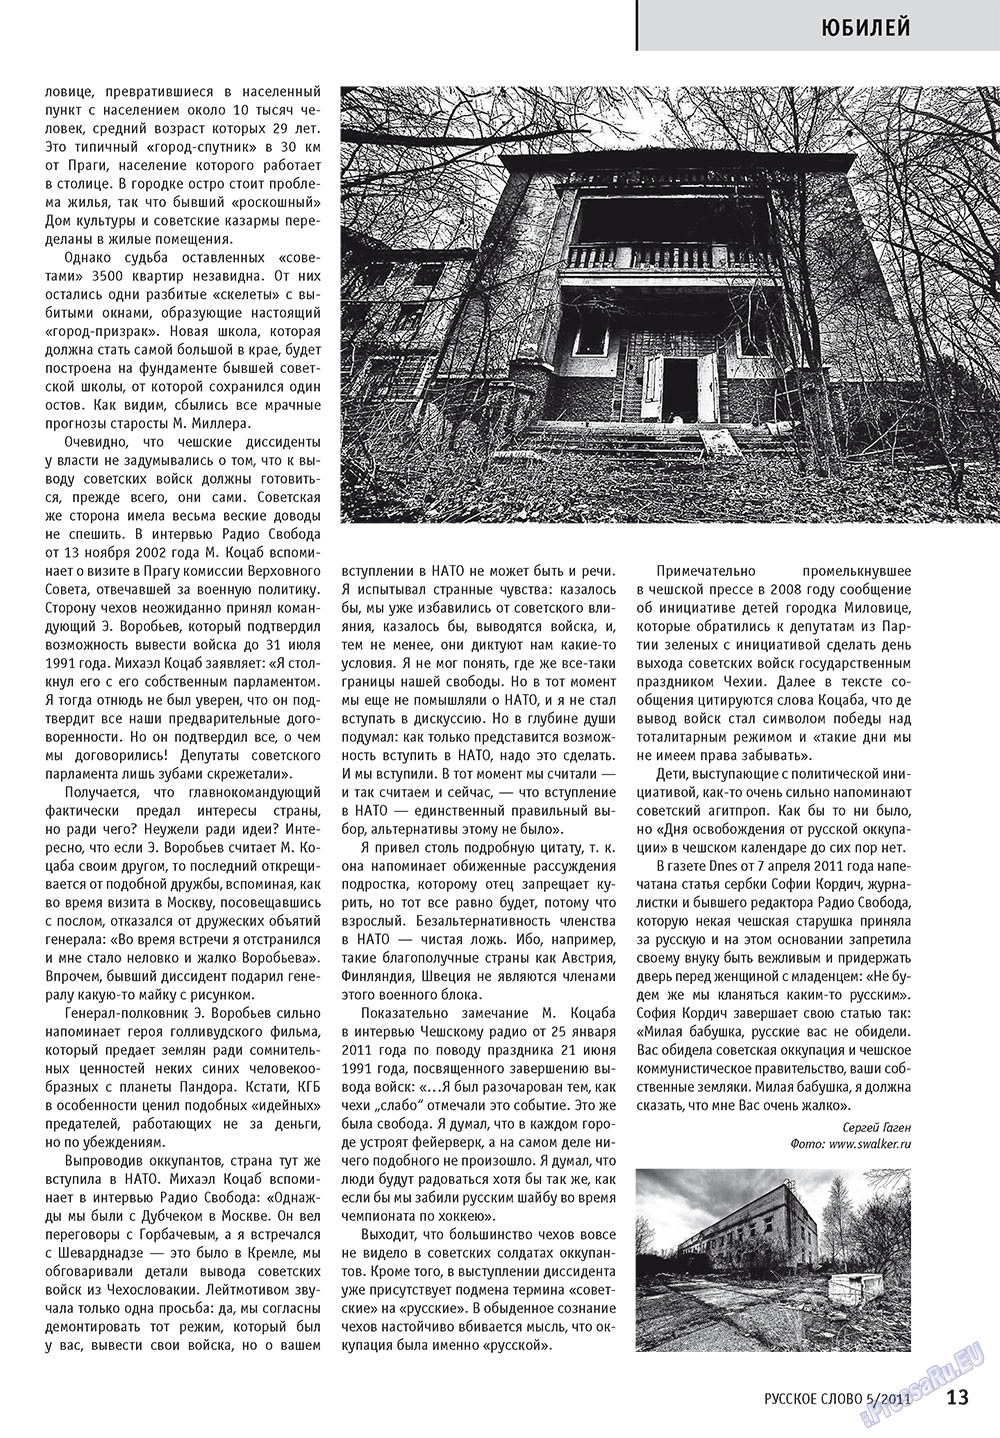 Русское слово, журнал. 2011 №5 стр.15